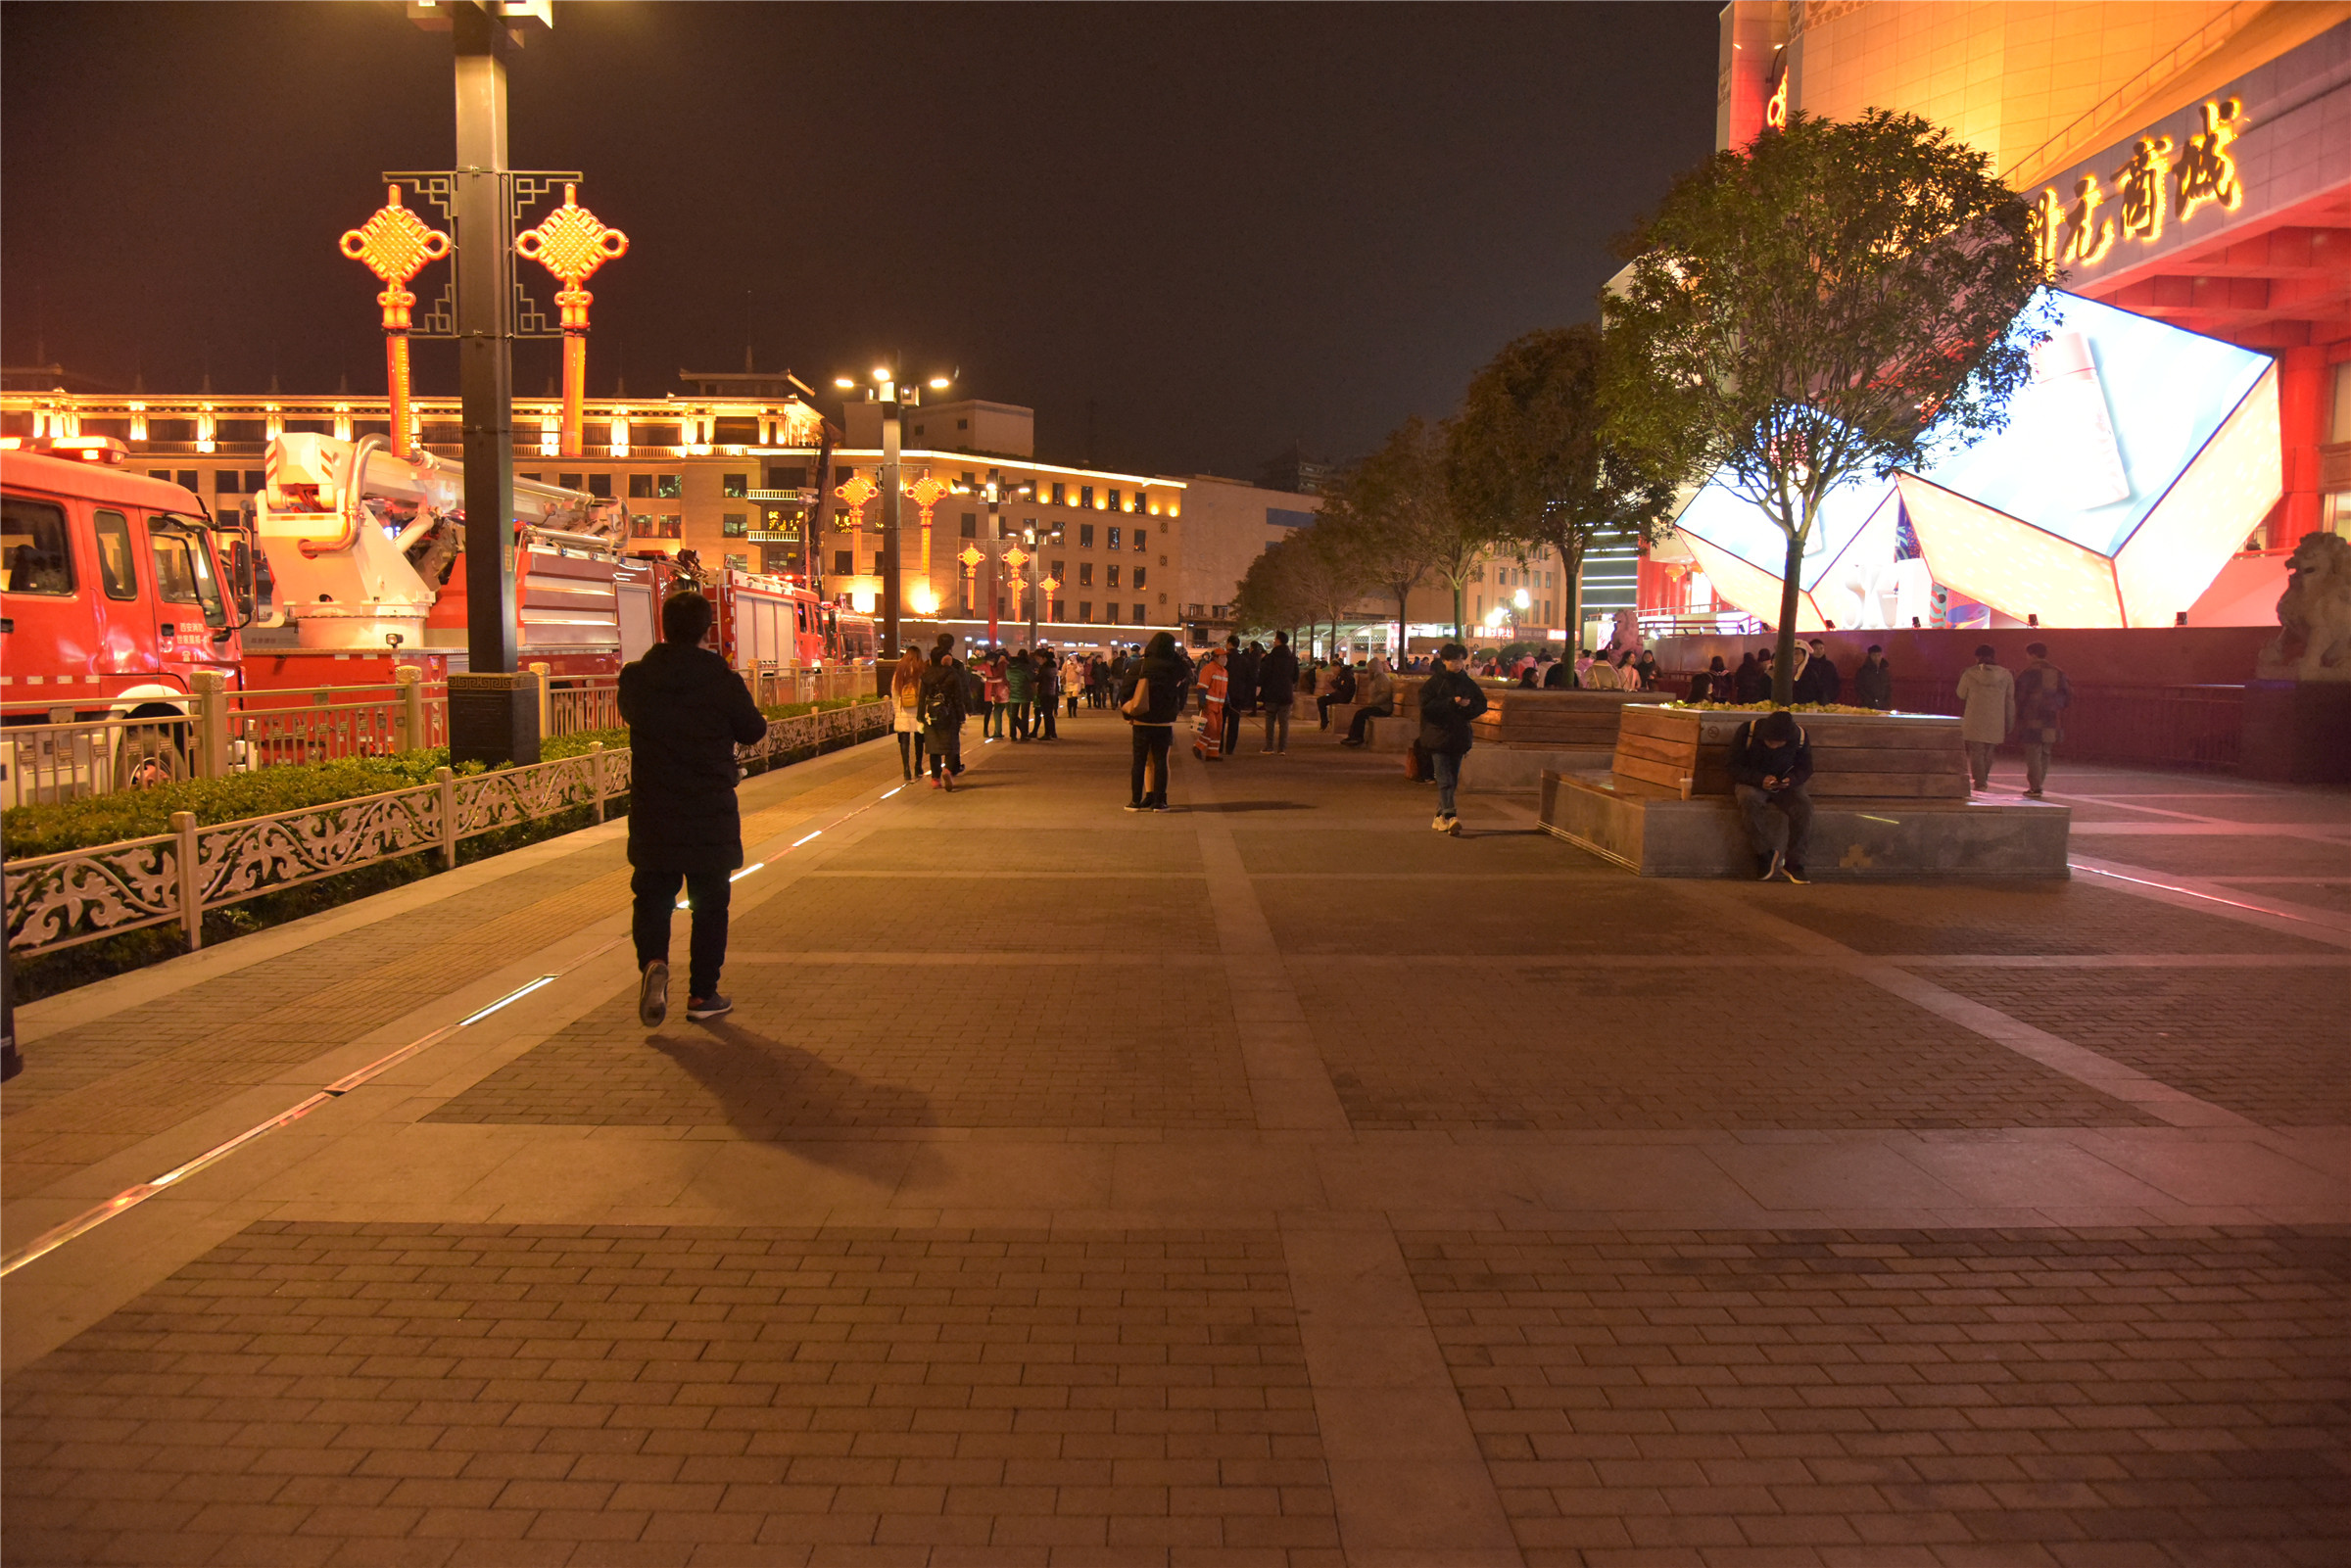 平安夜西安首遇冷:狂欢不再,安保堪比市民多,街道干净如人脸